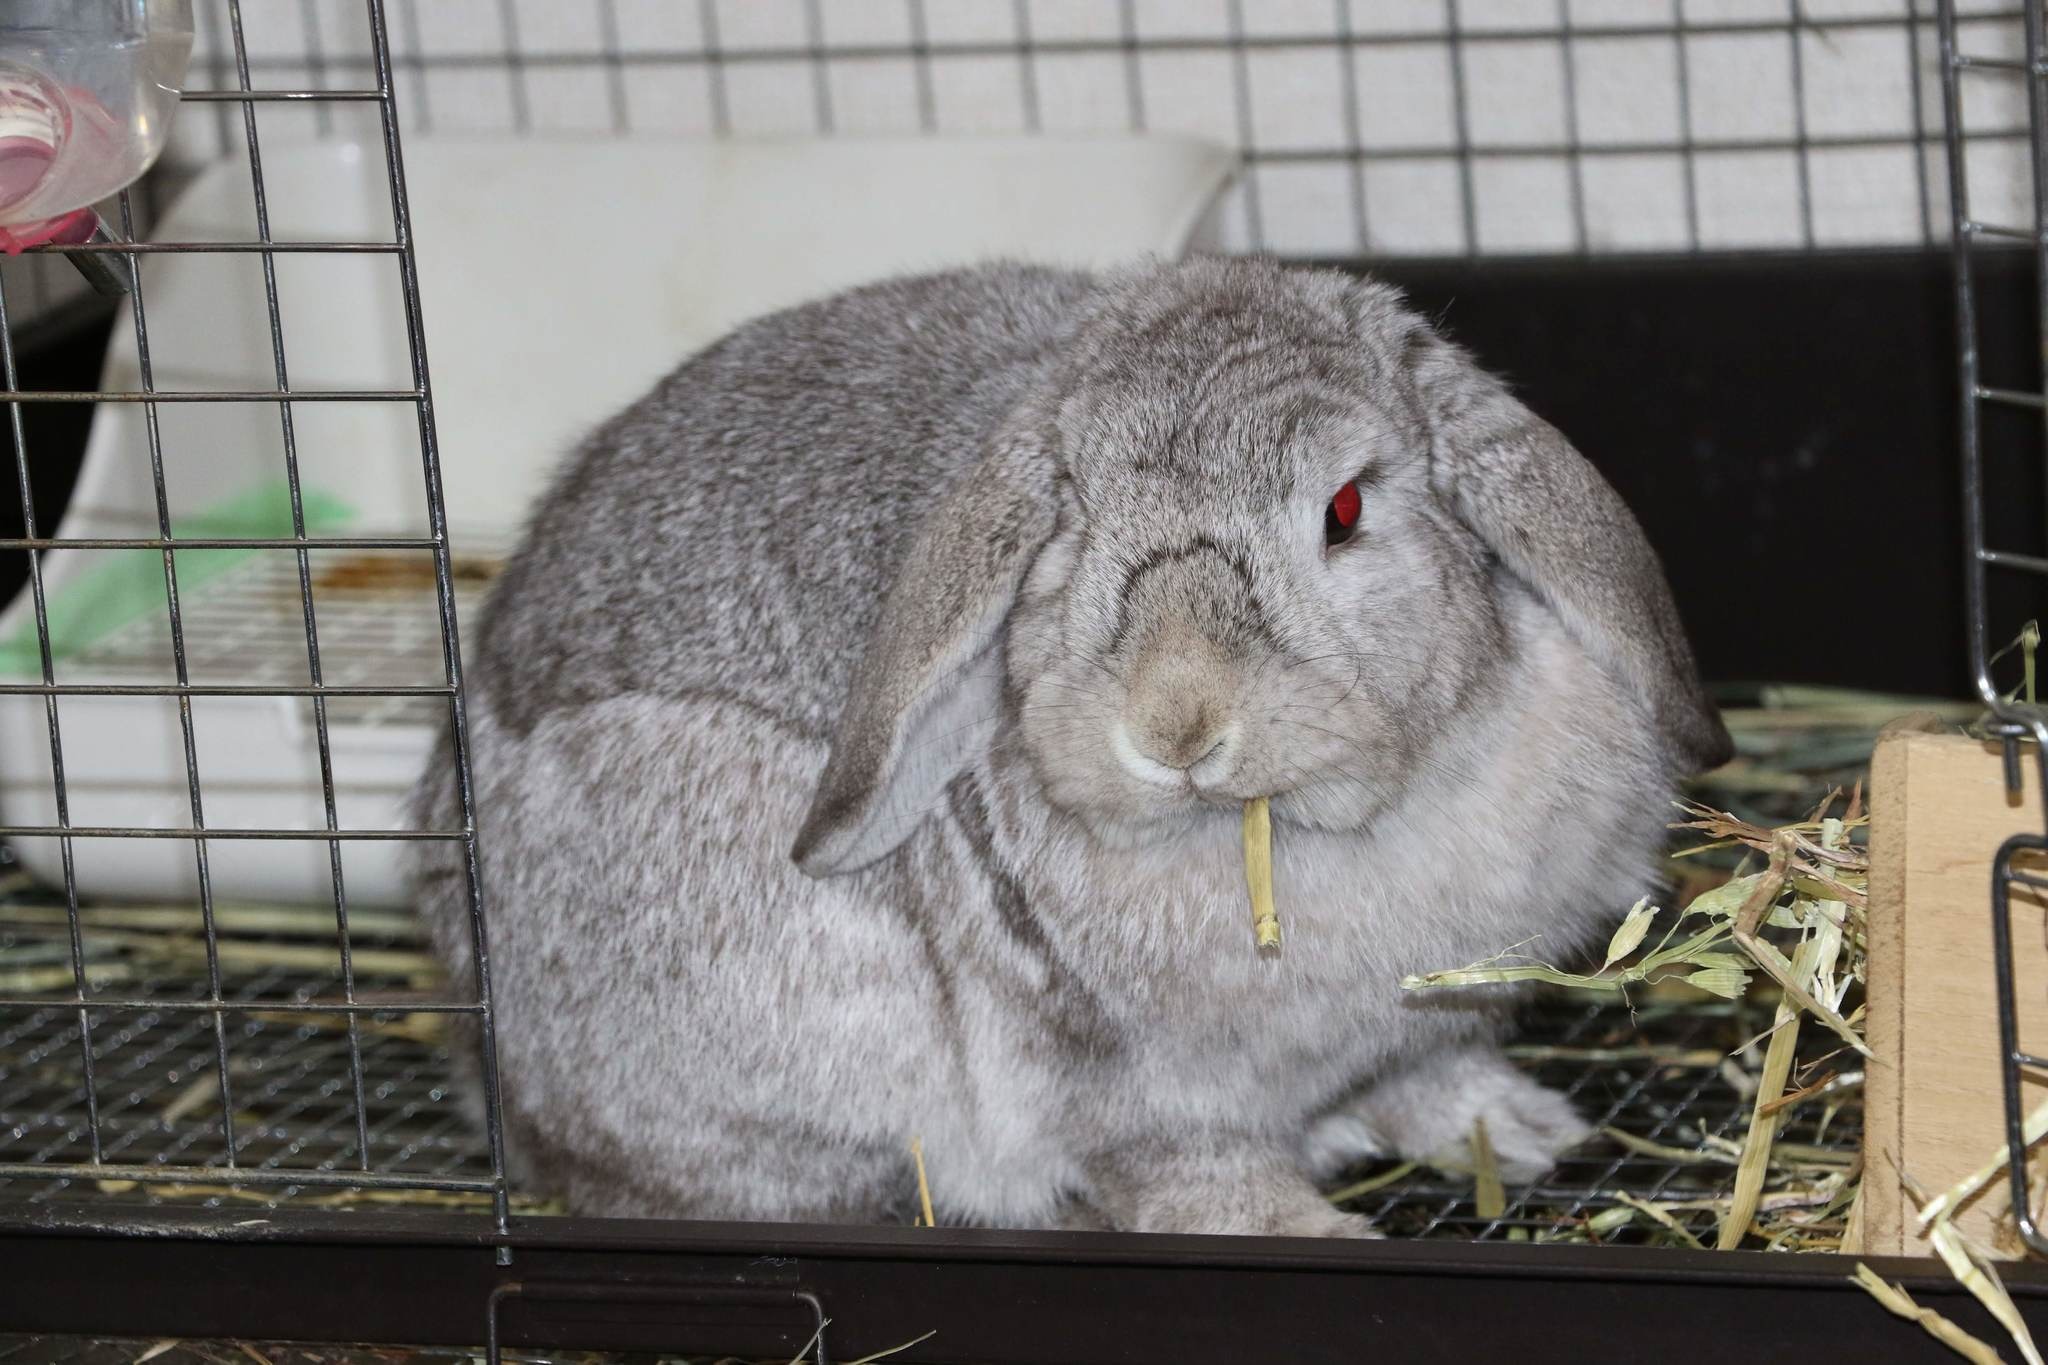 ズボラ女子とわがままウサギ Vol 9 ニンジンはダメ ウサギに与える食べ物の重要性 動物のリアルを伝えるwebメディア Reanimal